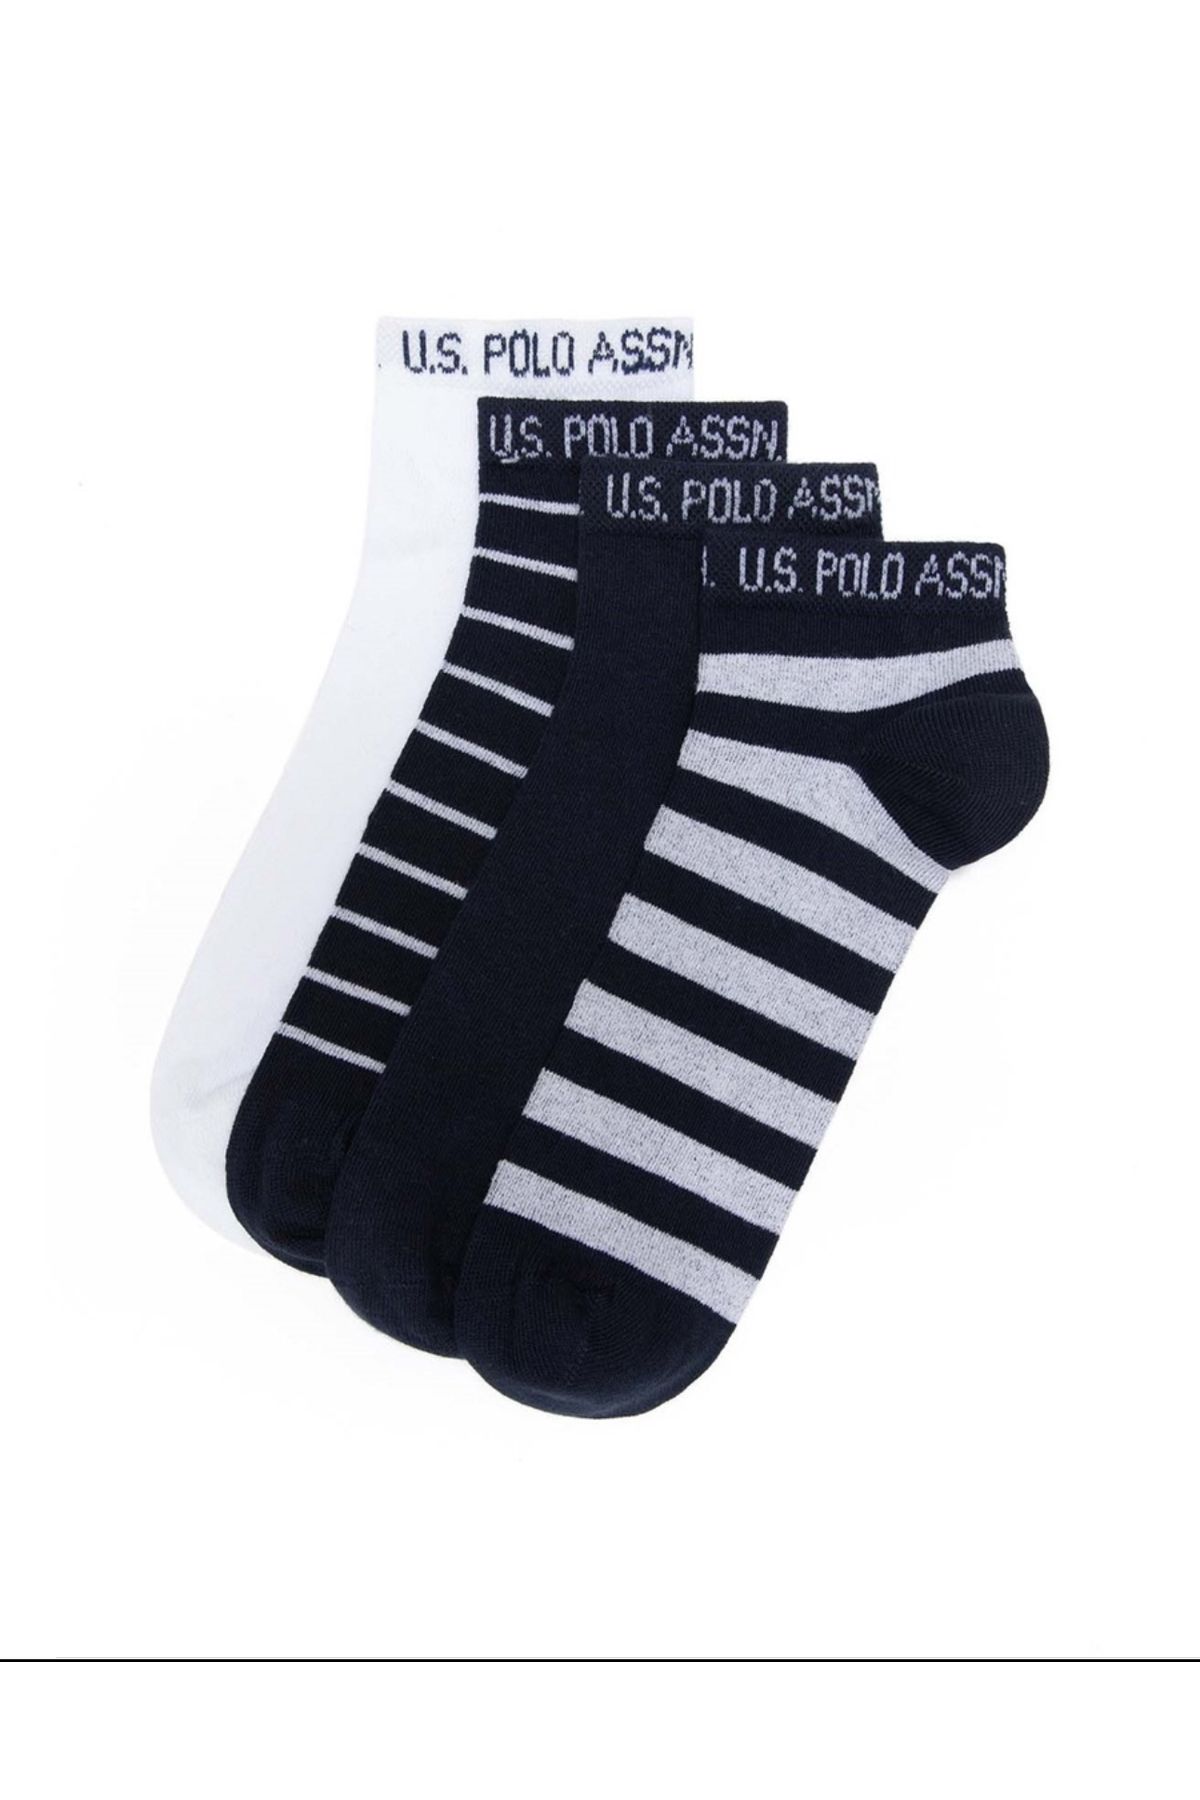 U.S. Polo Assn. U.S. Polo Assn. 4 lü Lacivert Bilek Erkek Çorap